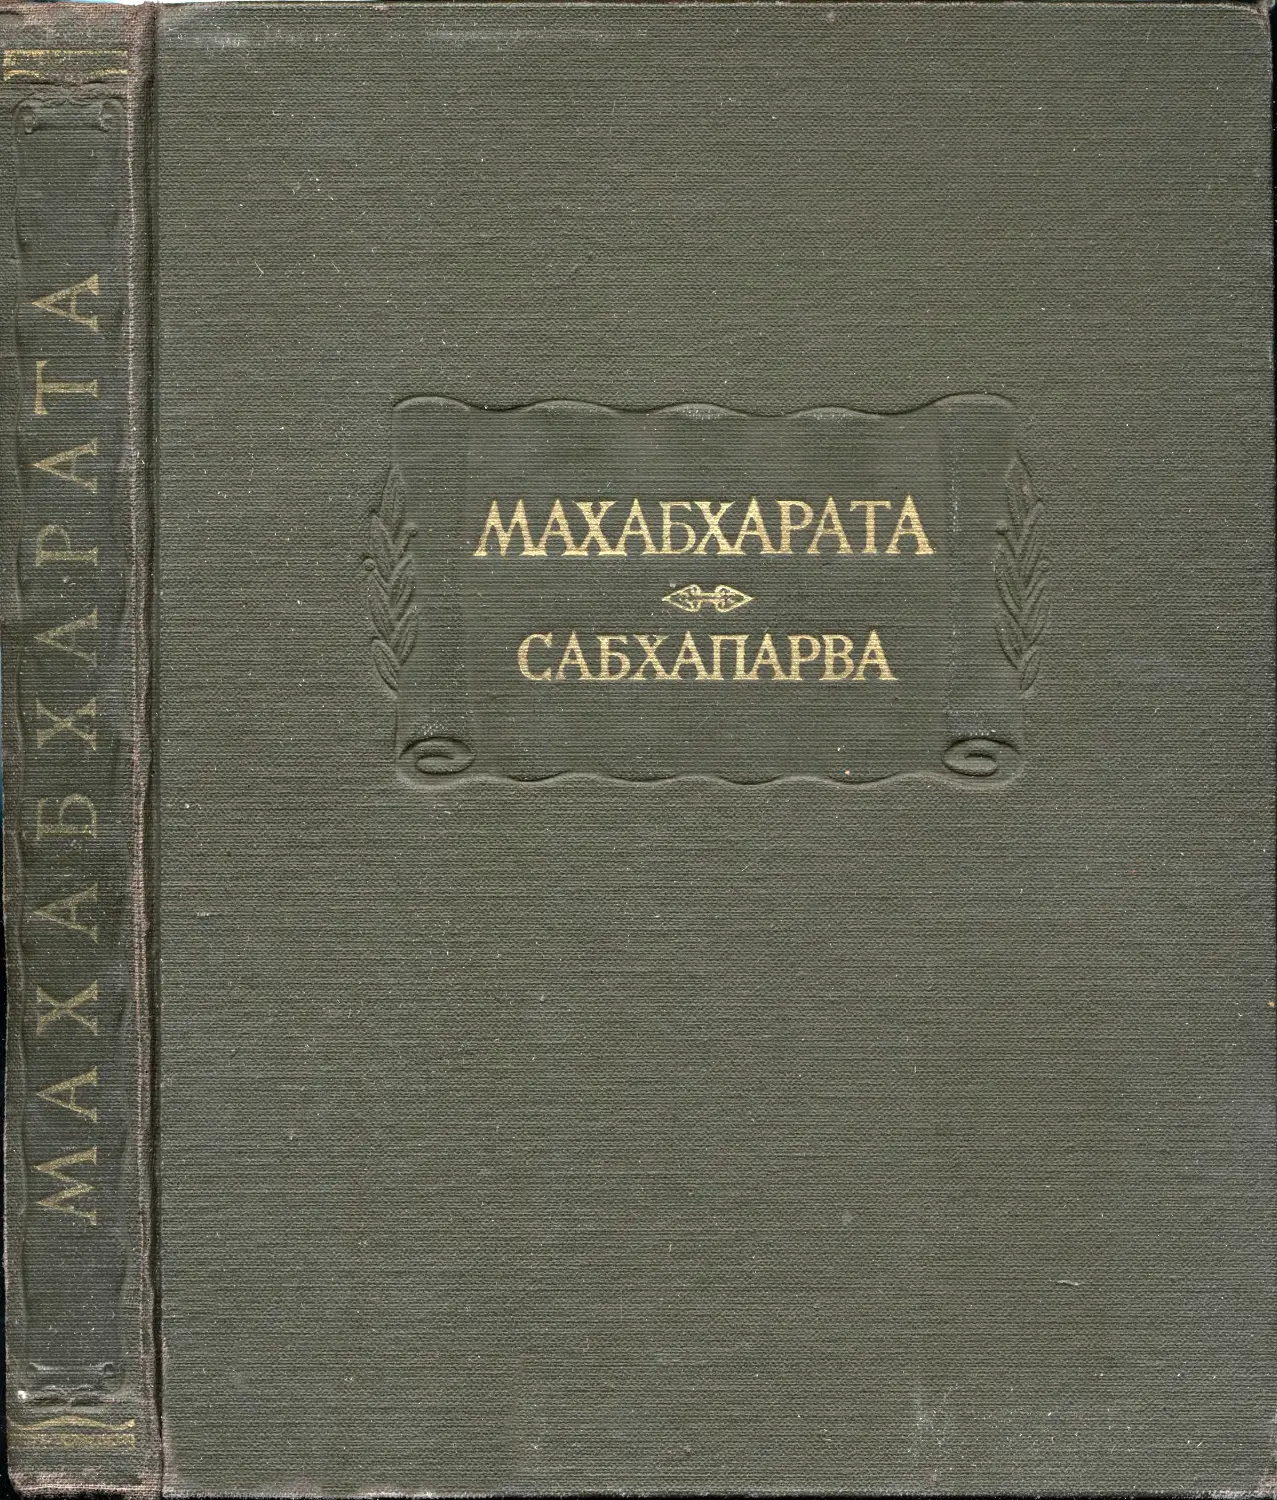 Махабхарата. Книга вторая. Сабхапарва или Книга о собрании – 1962